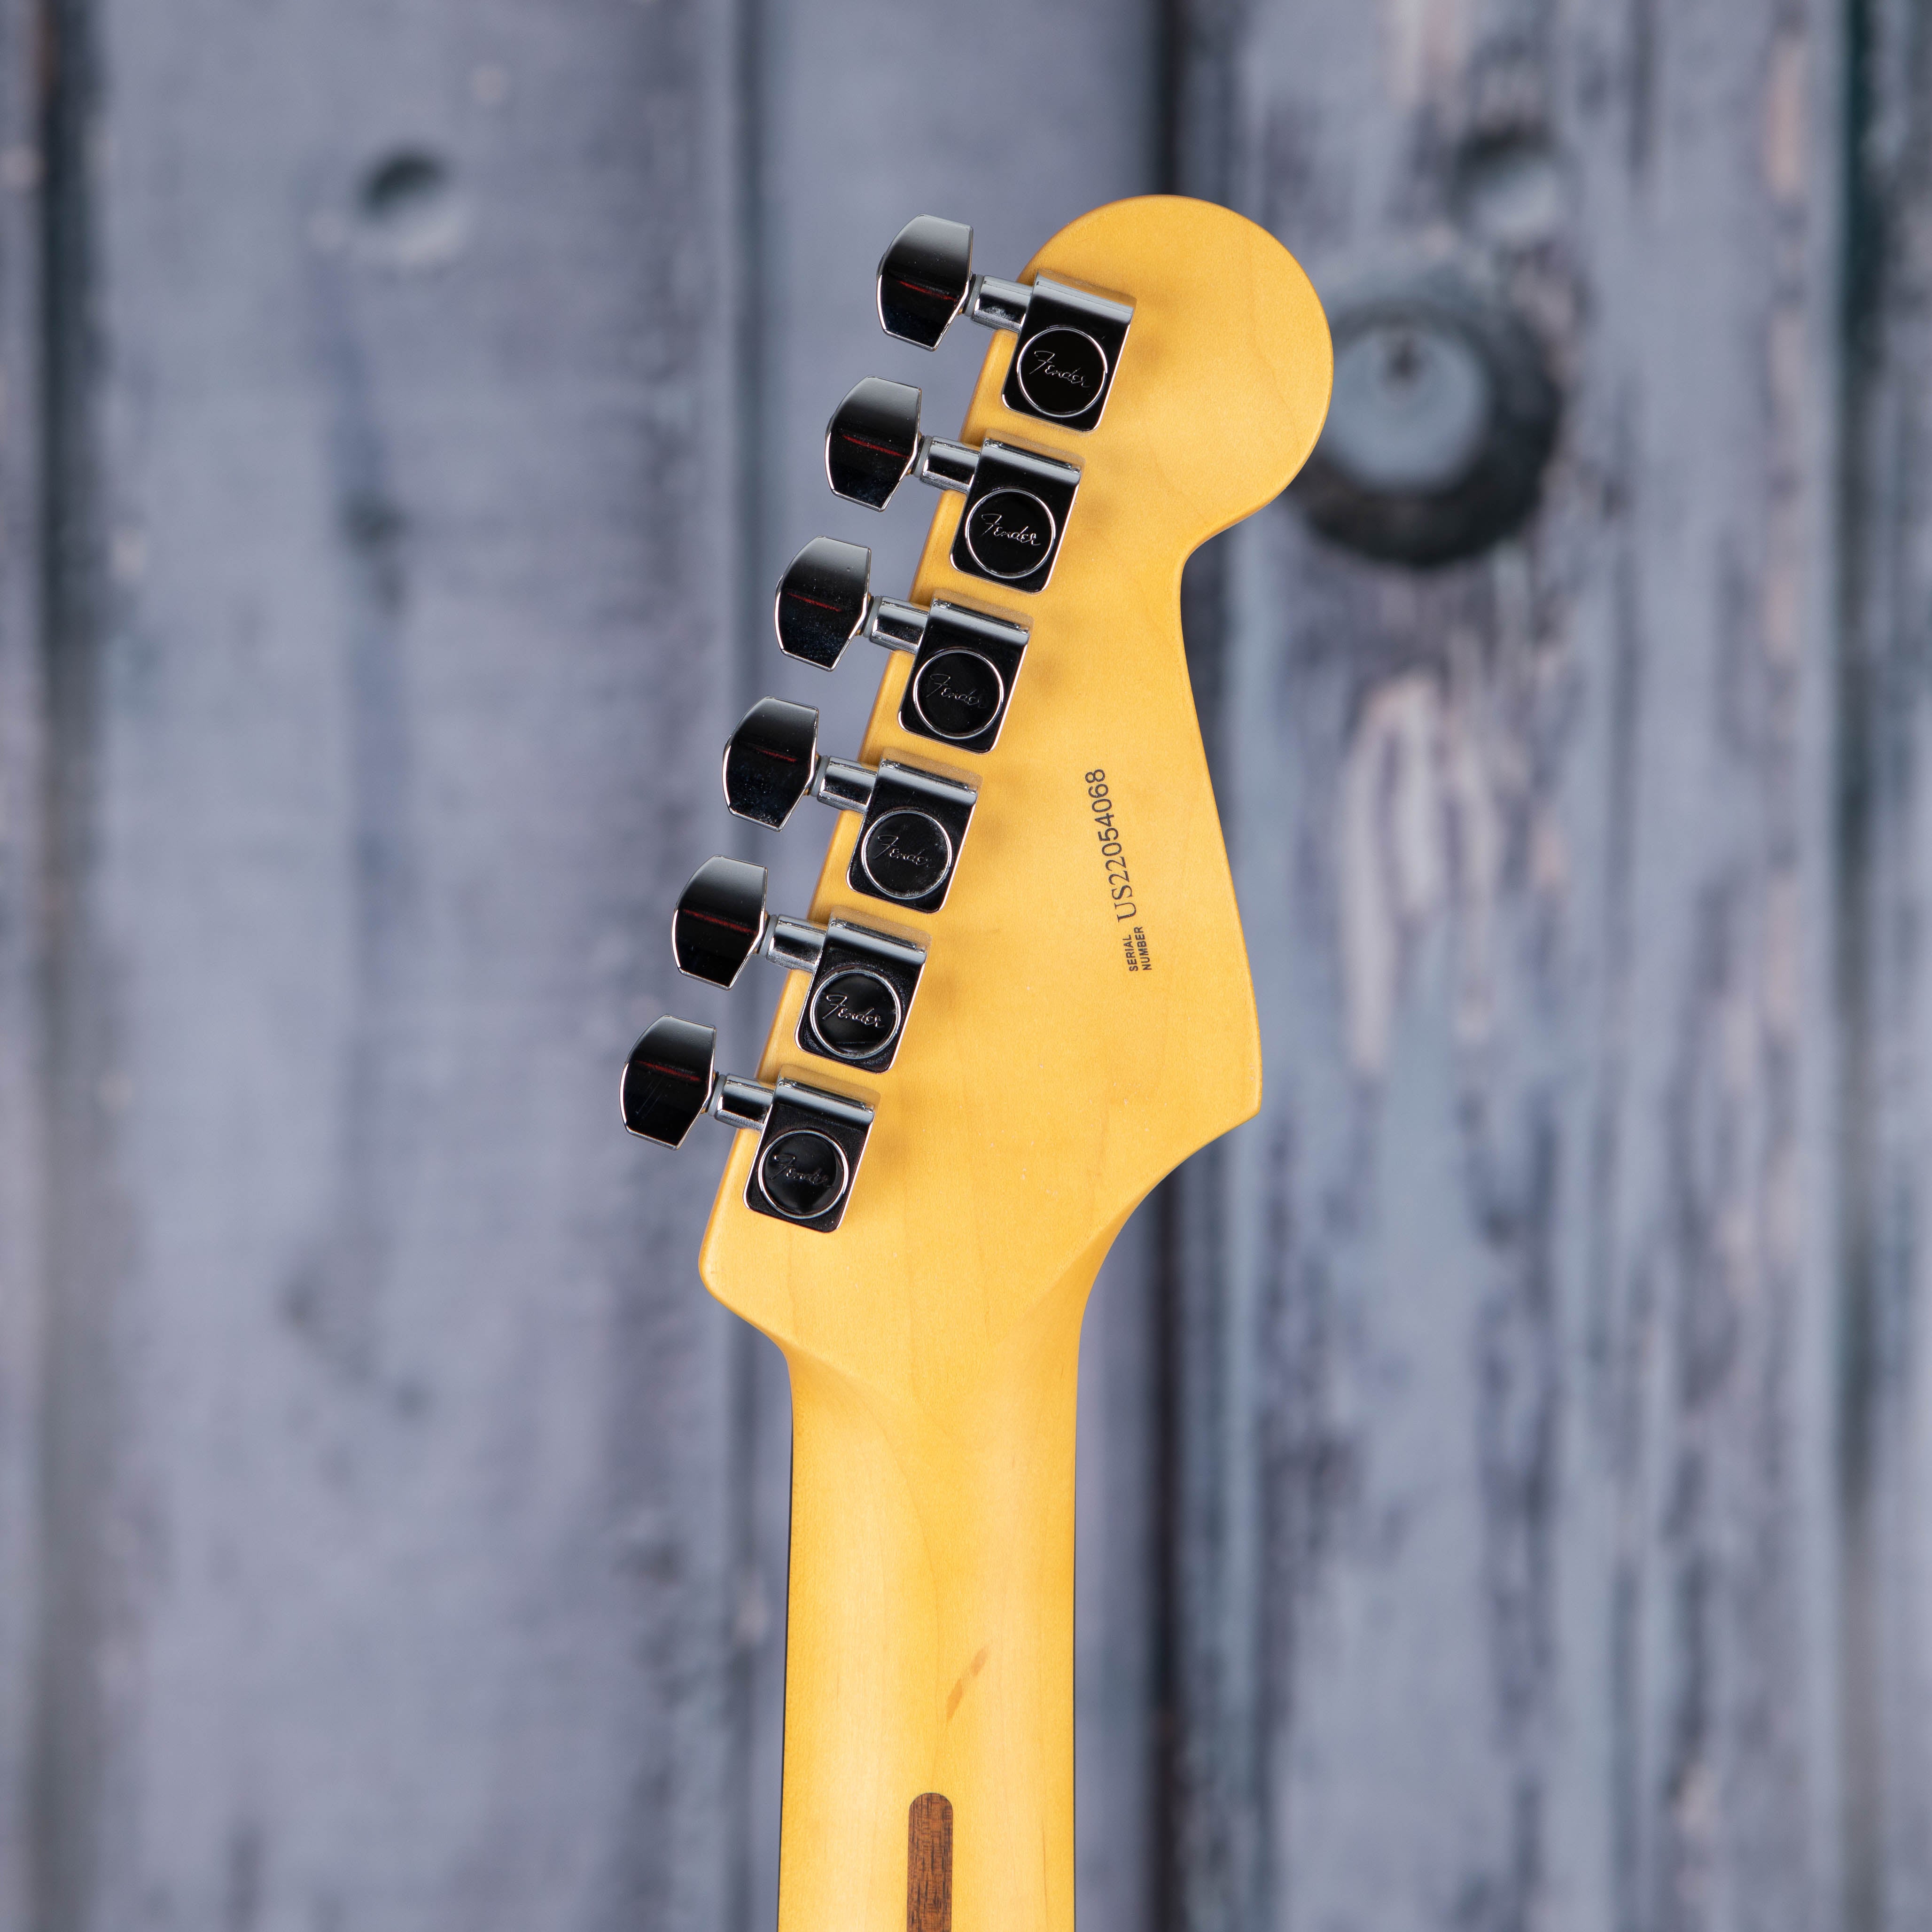 Fender American Professional II Stratocaster Left-Handed Electric Guitar, 3-Color Sunburst, back headstock